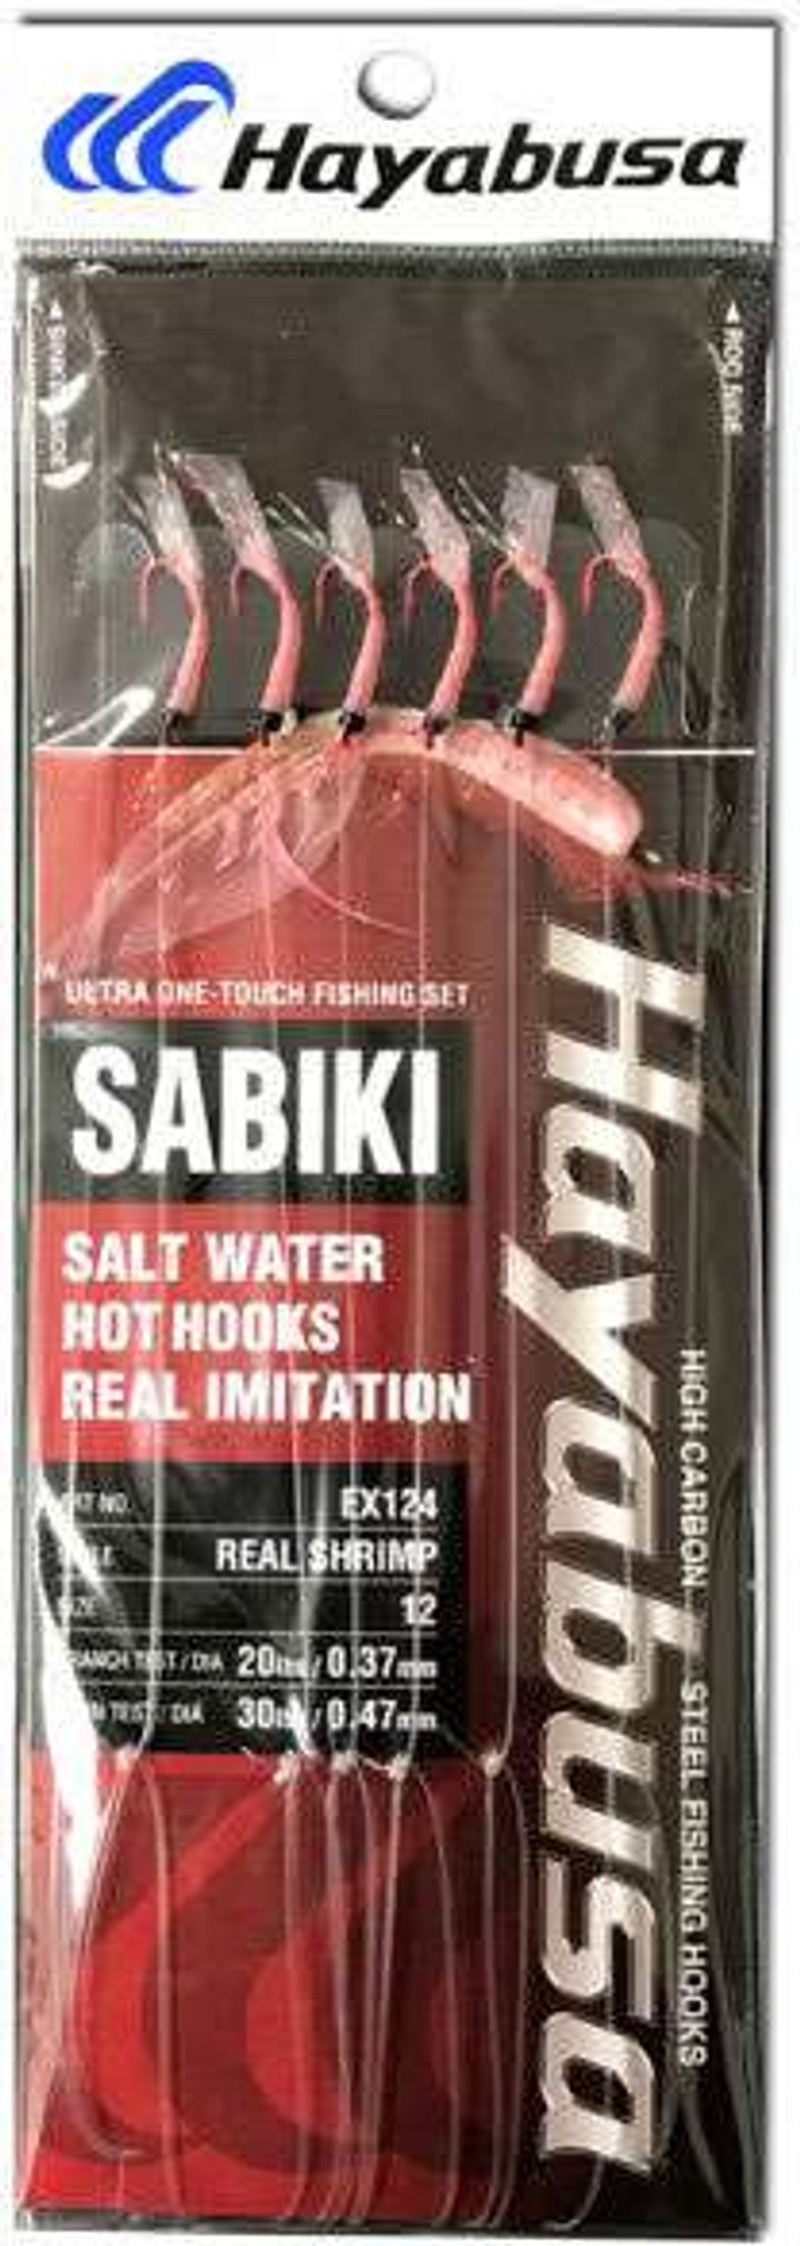 Hayabusa Sabiki Saltwater Hot Hooks - Red - Real Shrimp